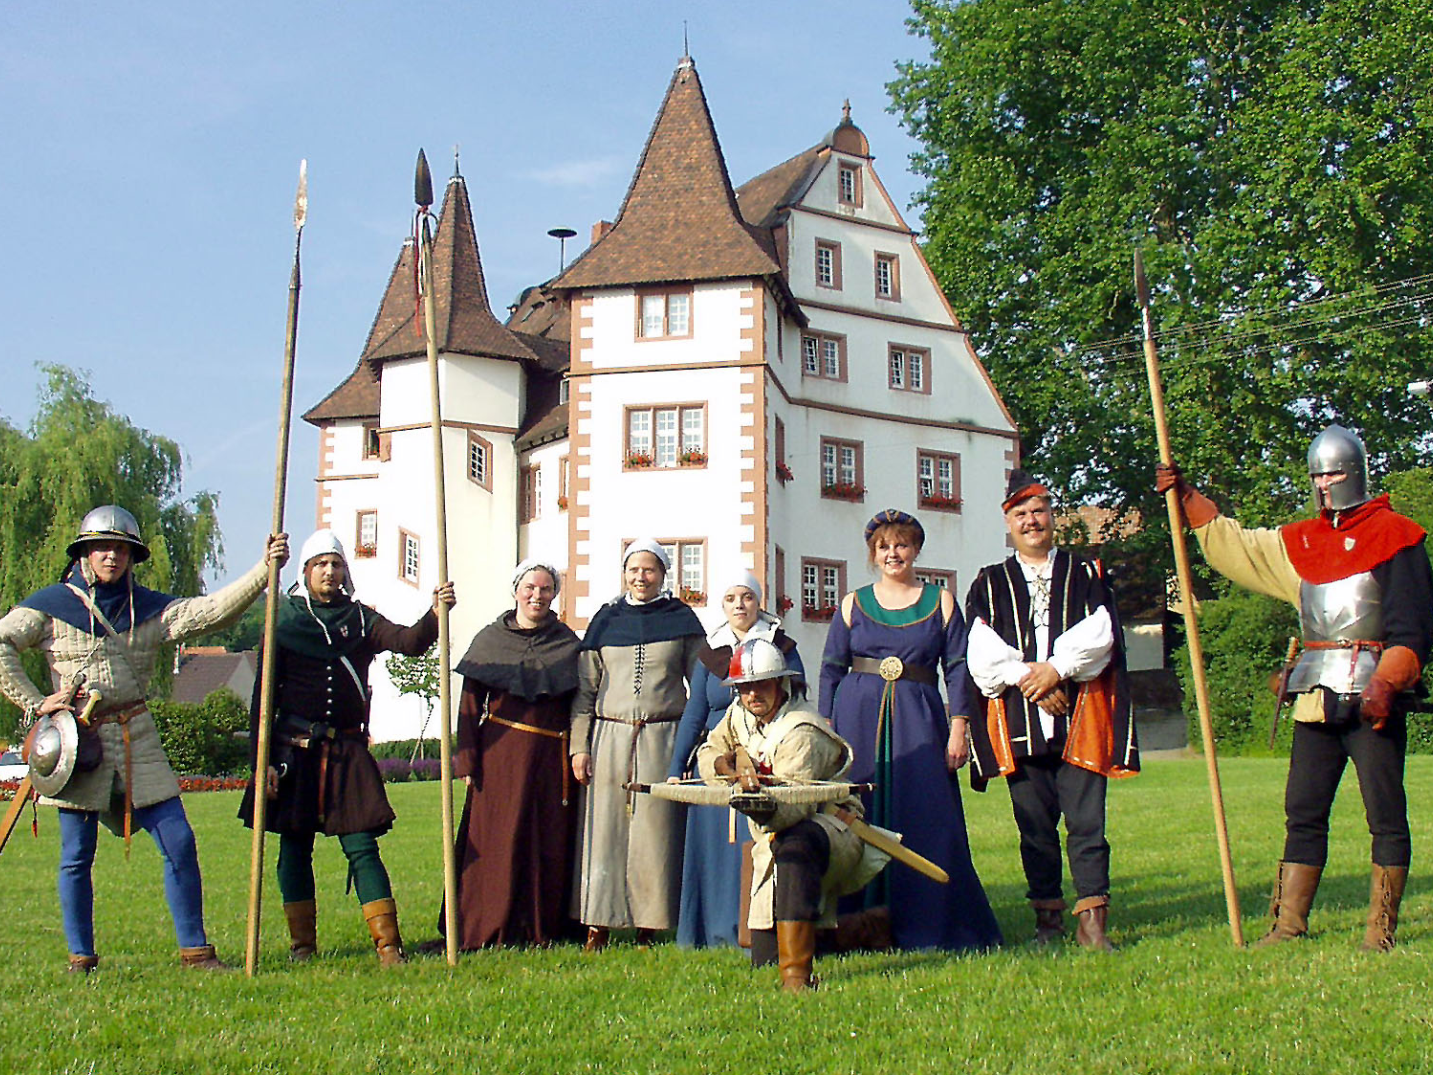 Bild: Traditionell gekleidete Menschen vor dem Schloss